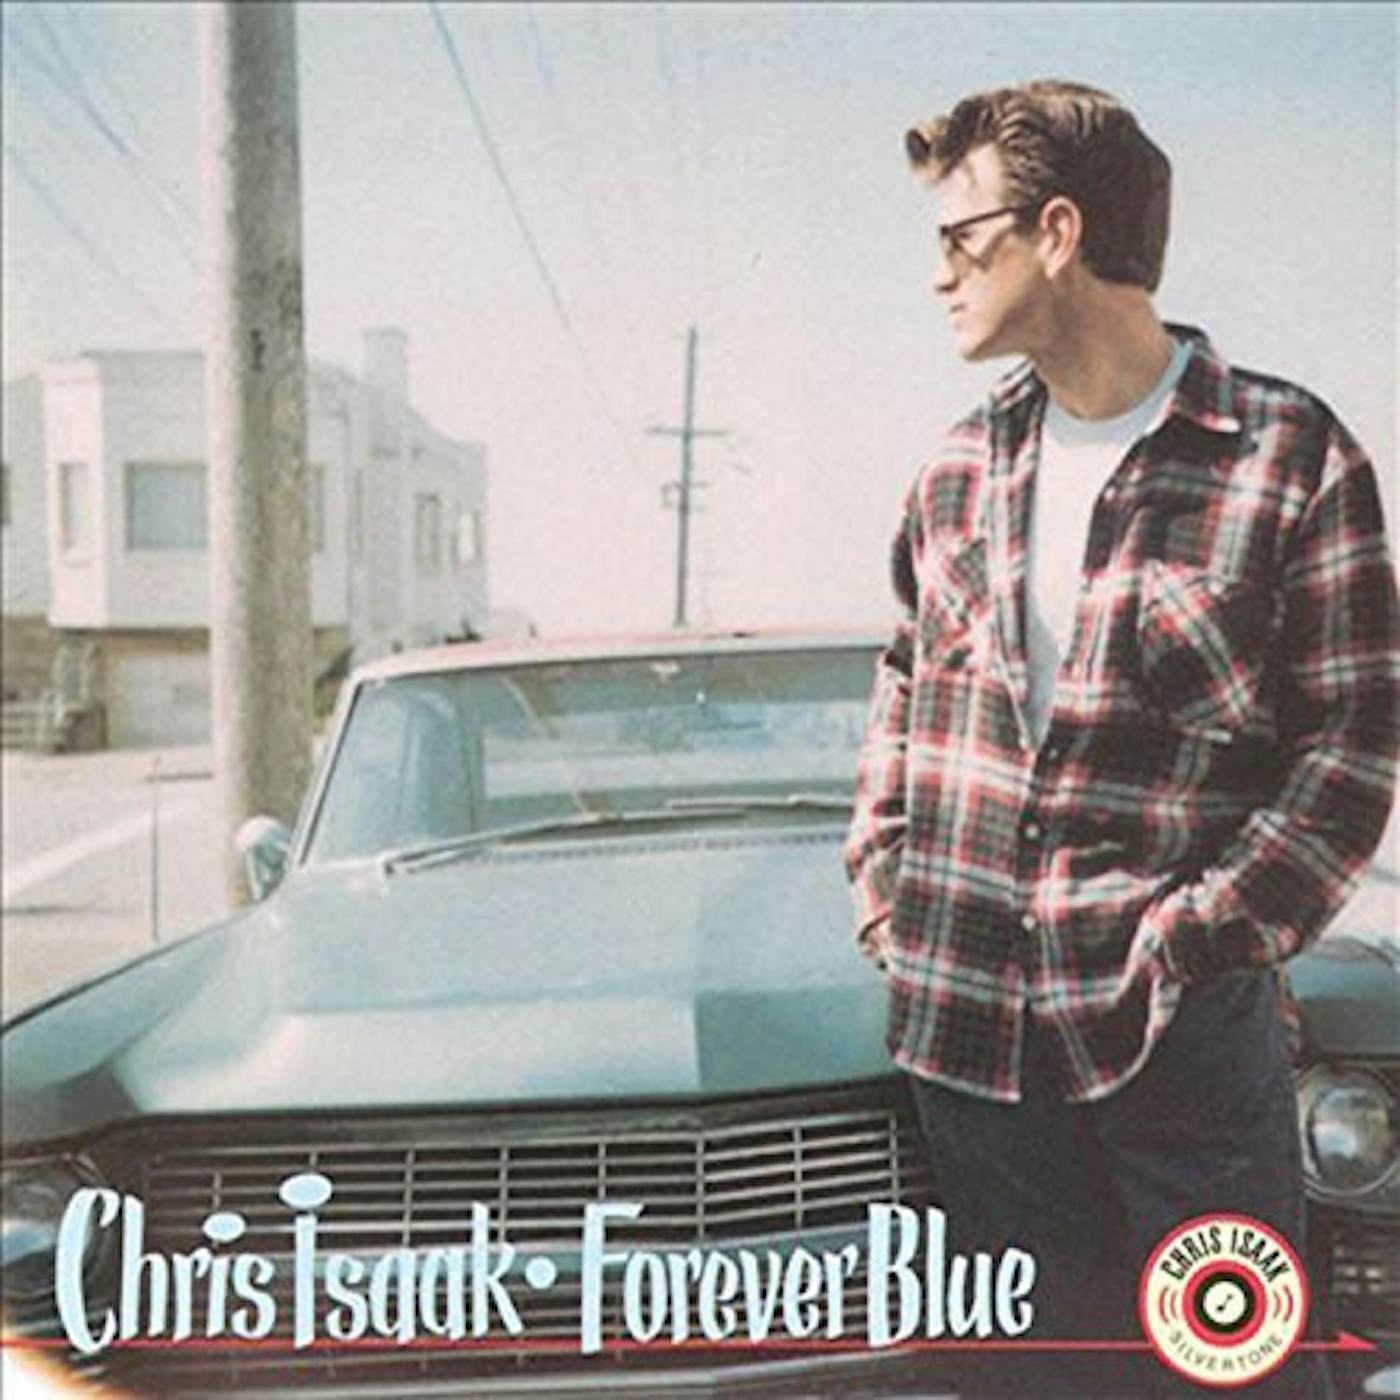 Chris Isaak Forever Blue Vinyl Record